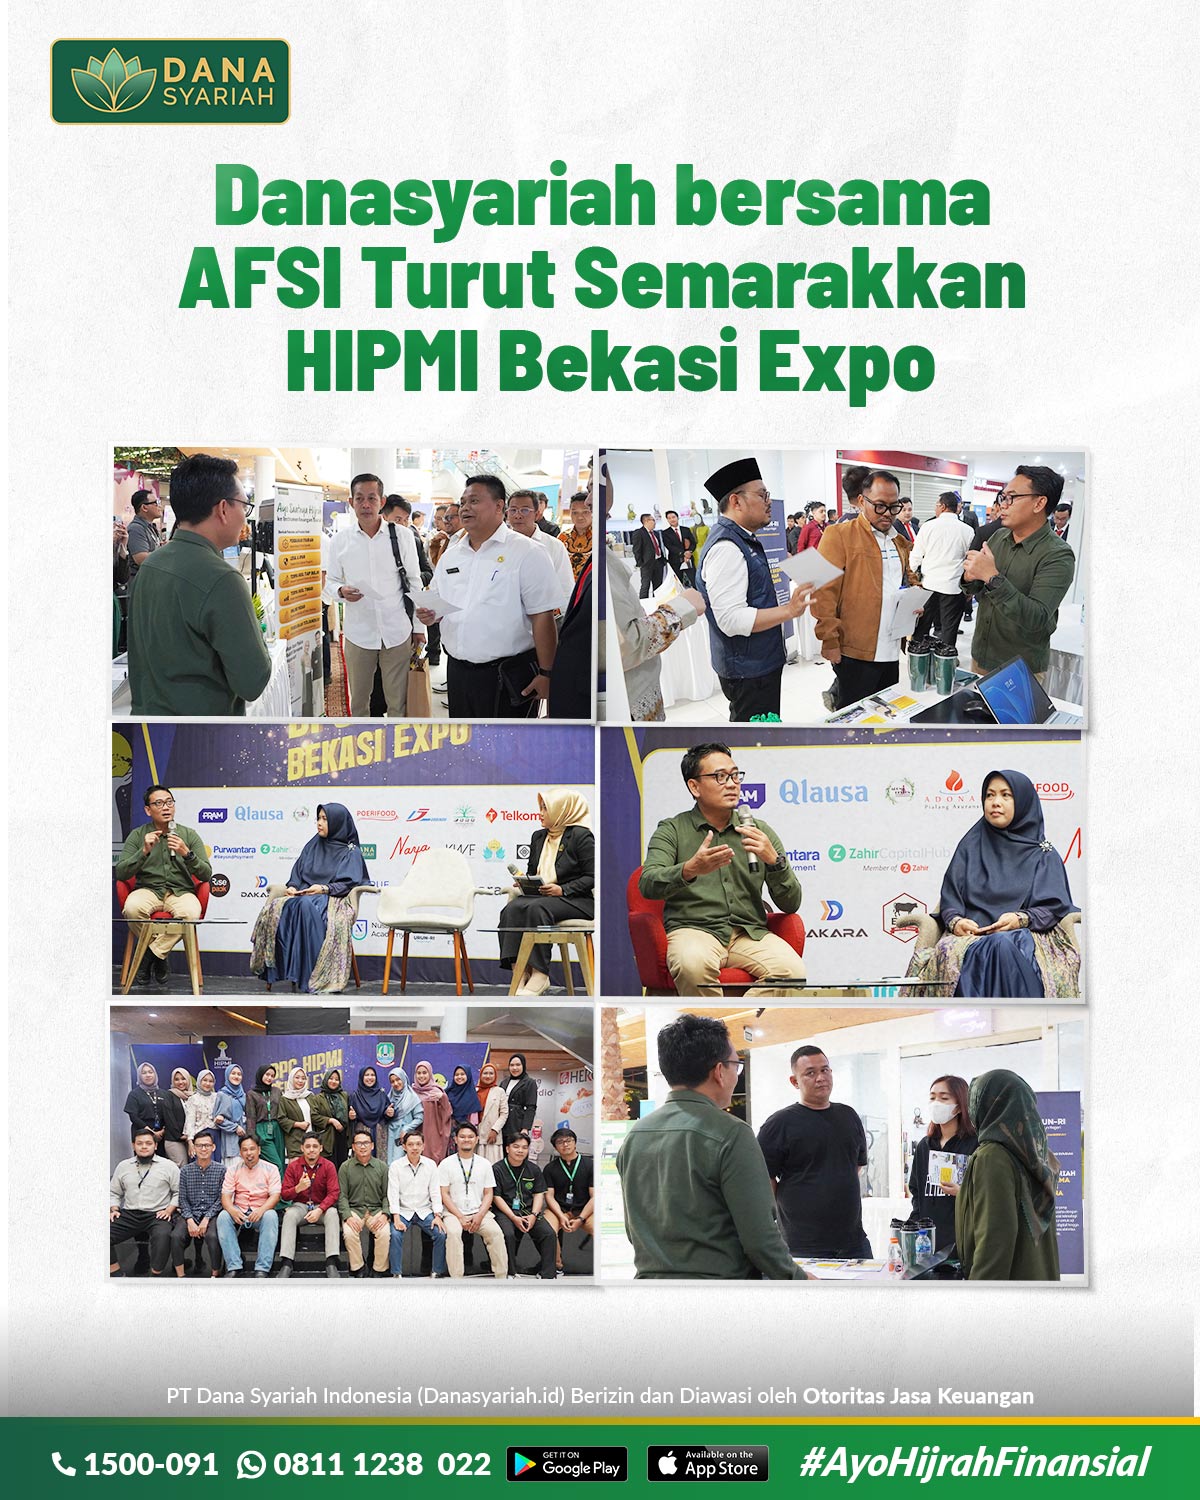 Dana Syariah Danasyariah bersama AFSI Turut Semarakkan HIMPI Bekasi Expo